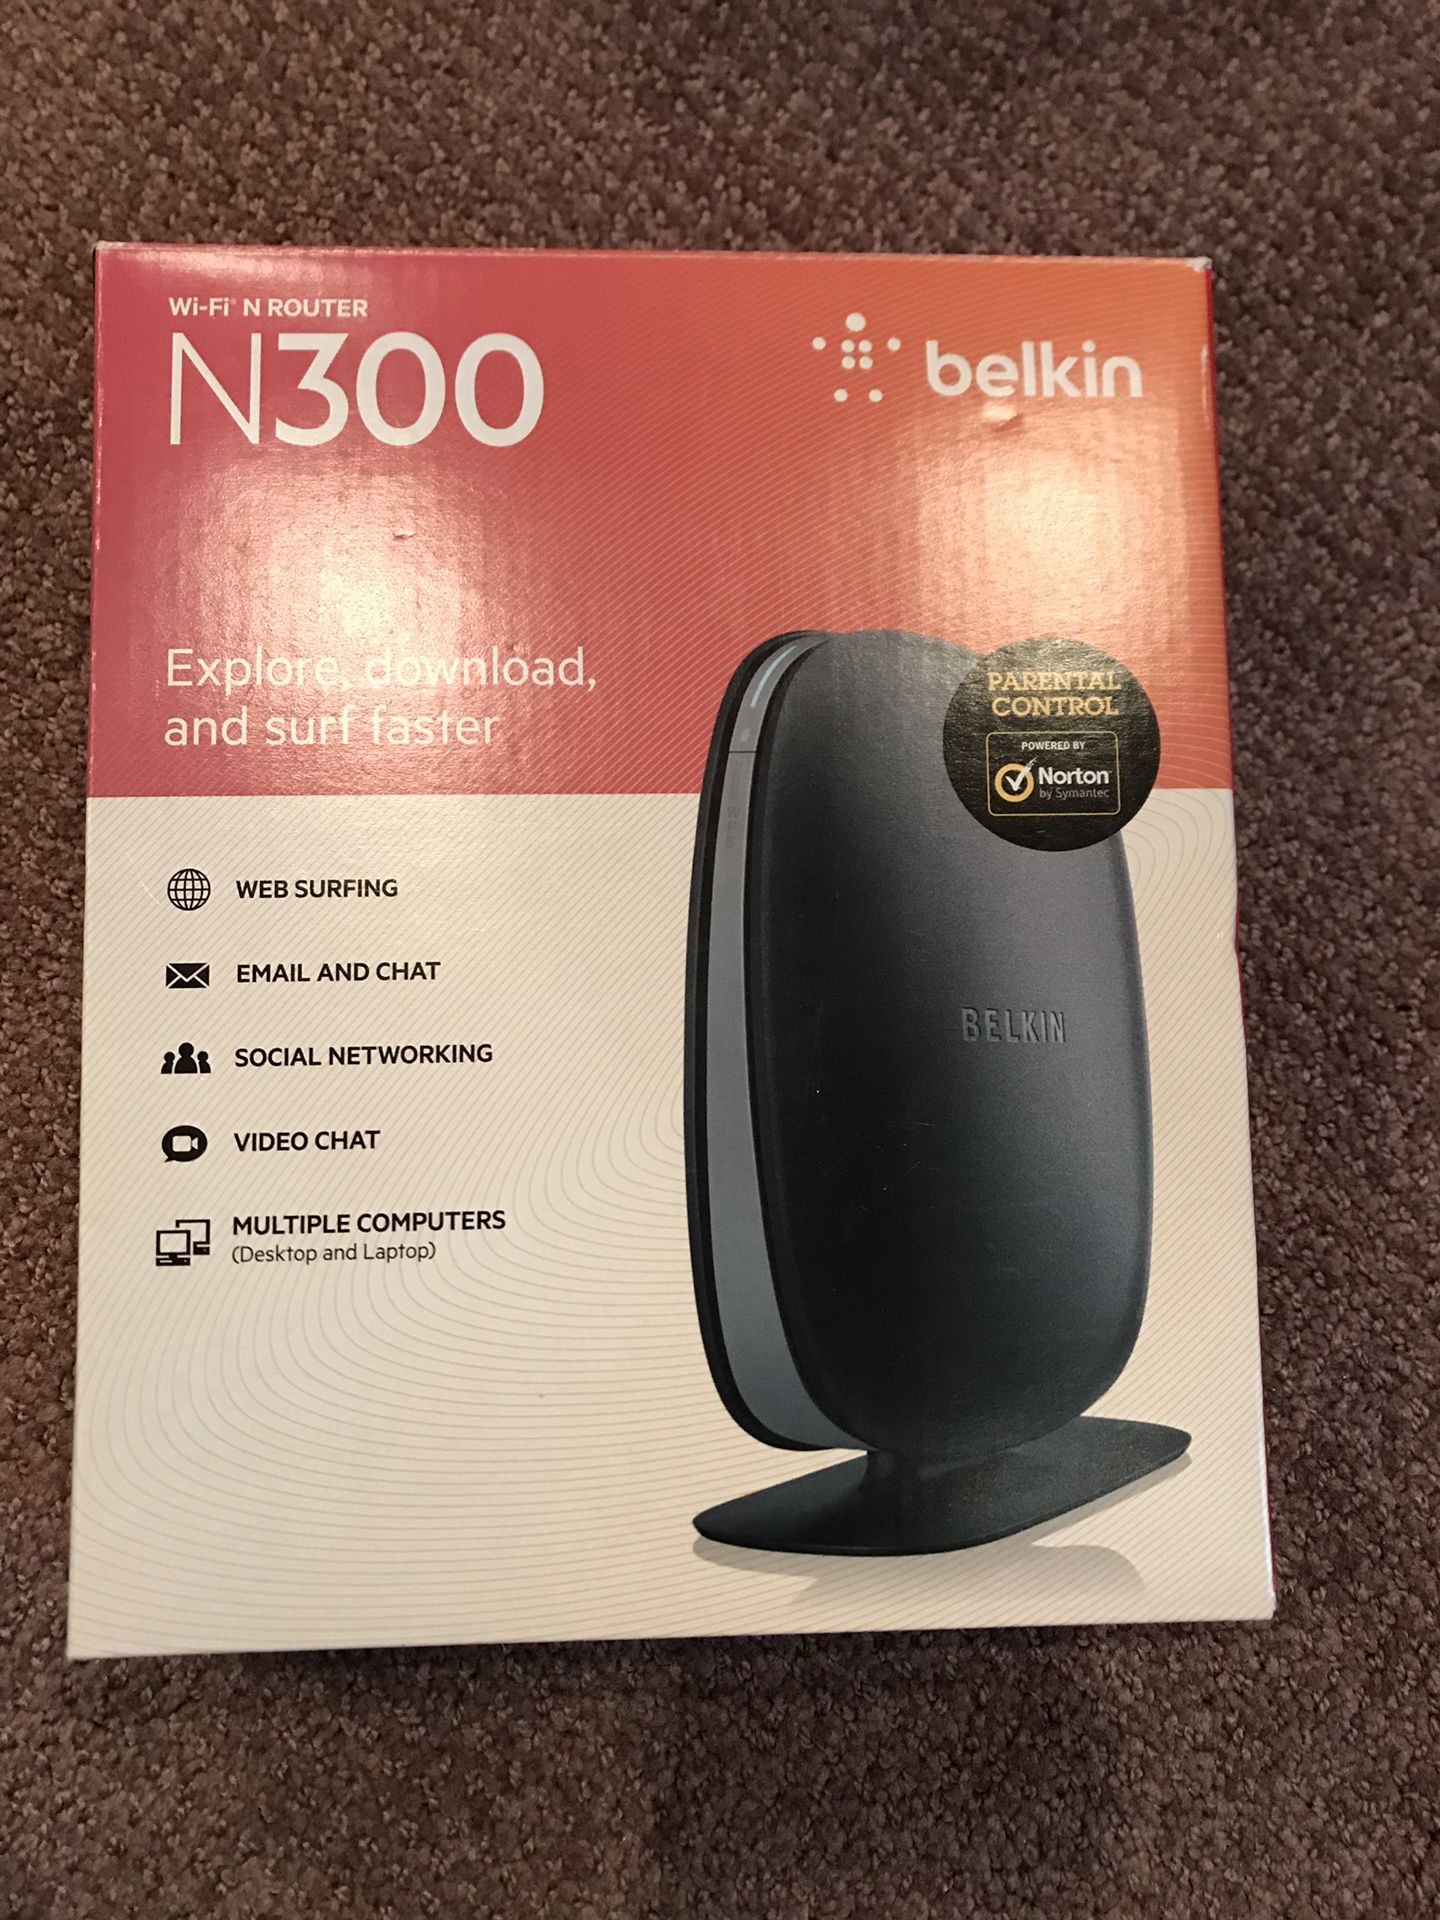 Belkin N300 wi-fi router